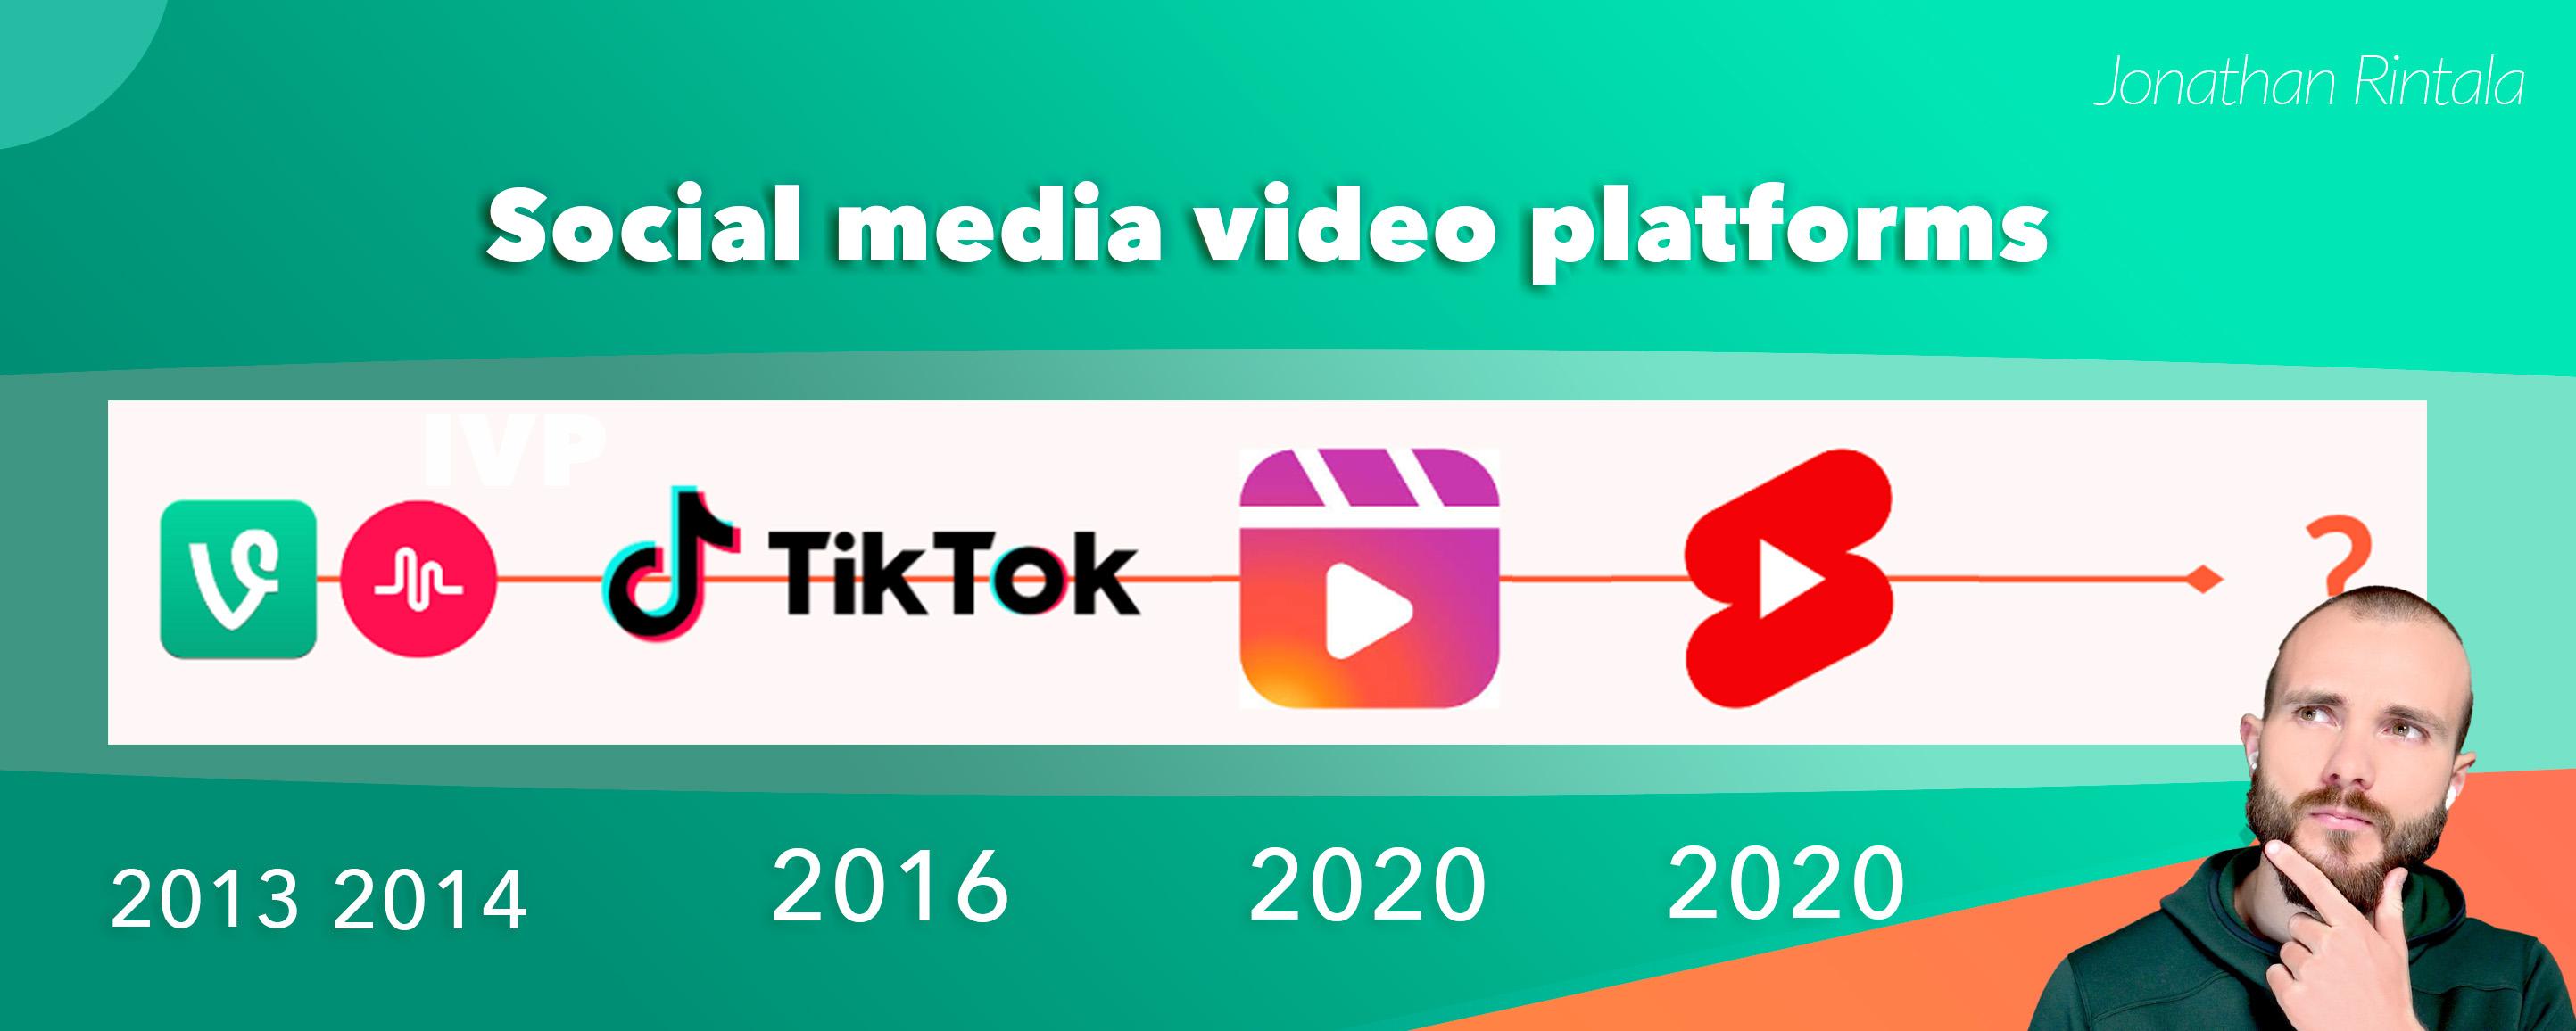 Social media video platforms - The evolution of short-format